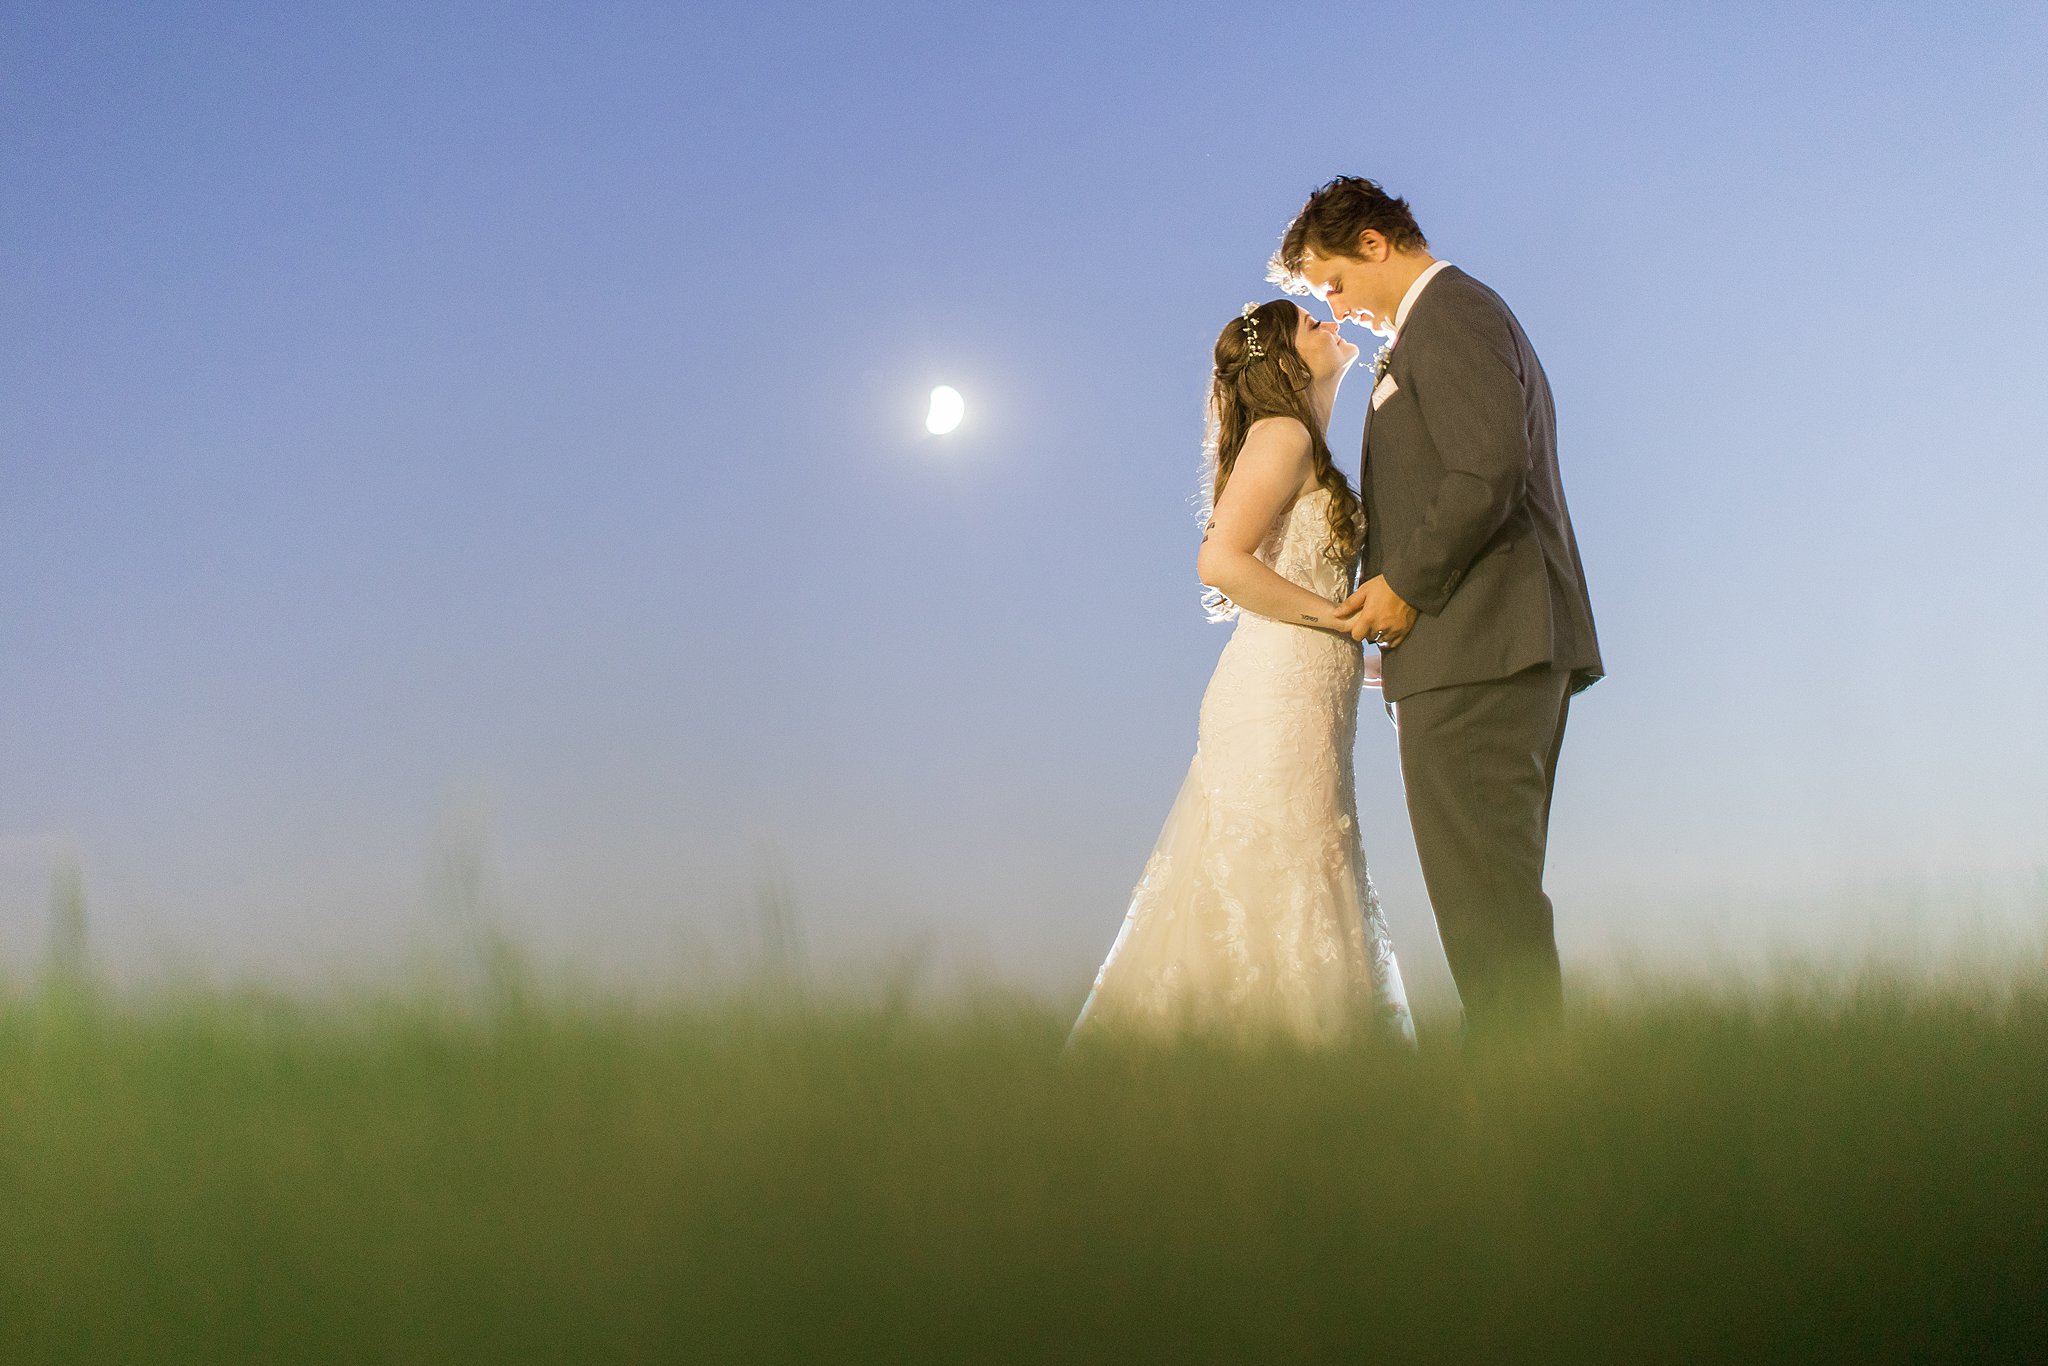 Wedding Photo under the moon Night portrait Fargo ND 